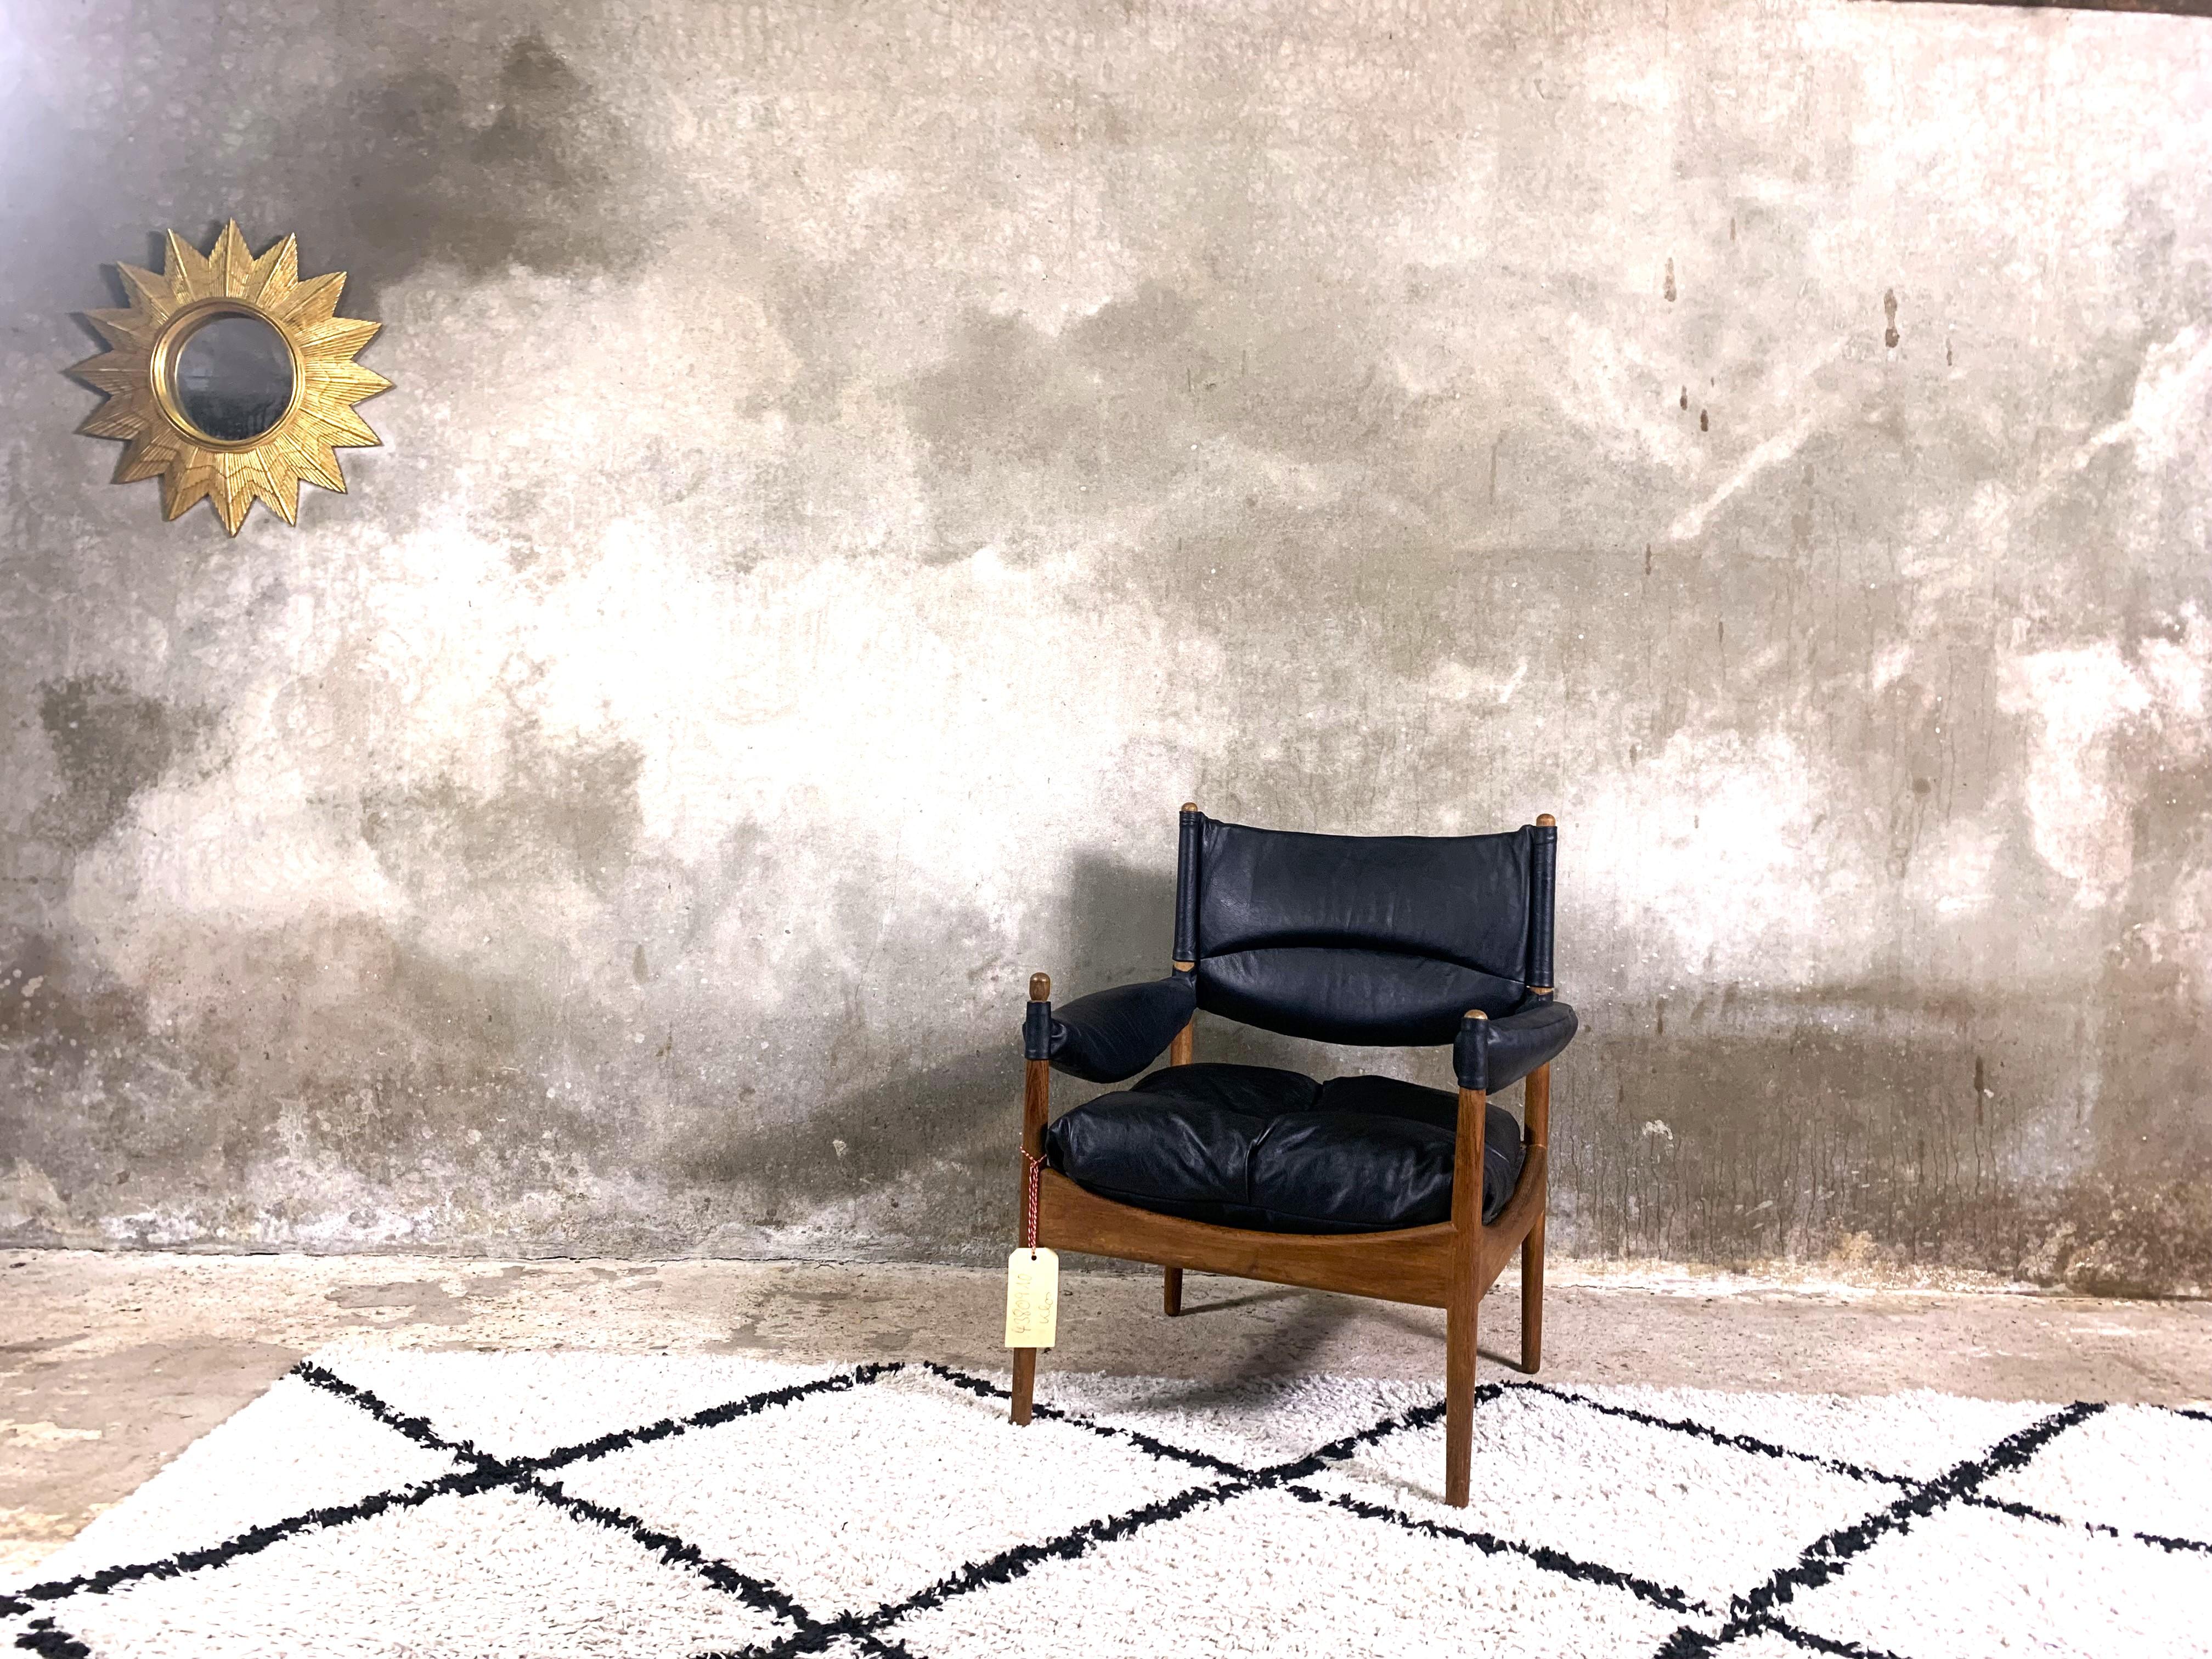 Ein schöner Sessel aus der Modus-Serie, entworfen von Kristian Vedel in den 1960er Jahren. Hergestellt aus massivem Teakholz. Kissen aus natürlichem, zartem Leder, gefüllt mit Gänsefedern, die den Sessel besonders bequem machen. Ein wunderbares